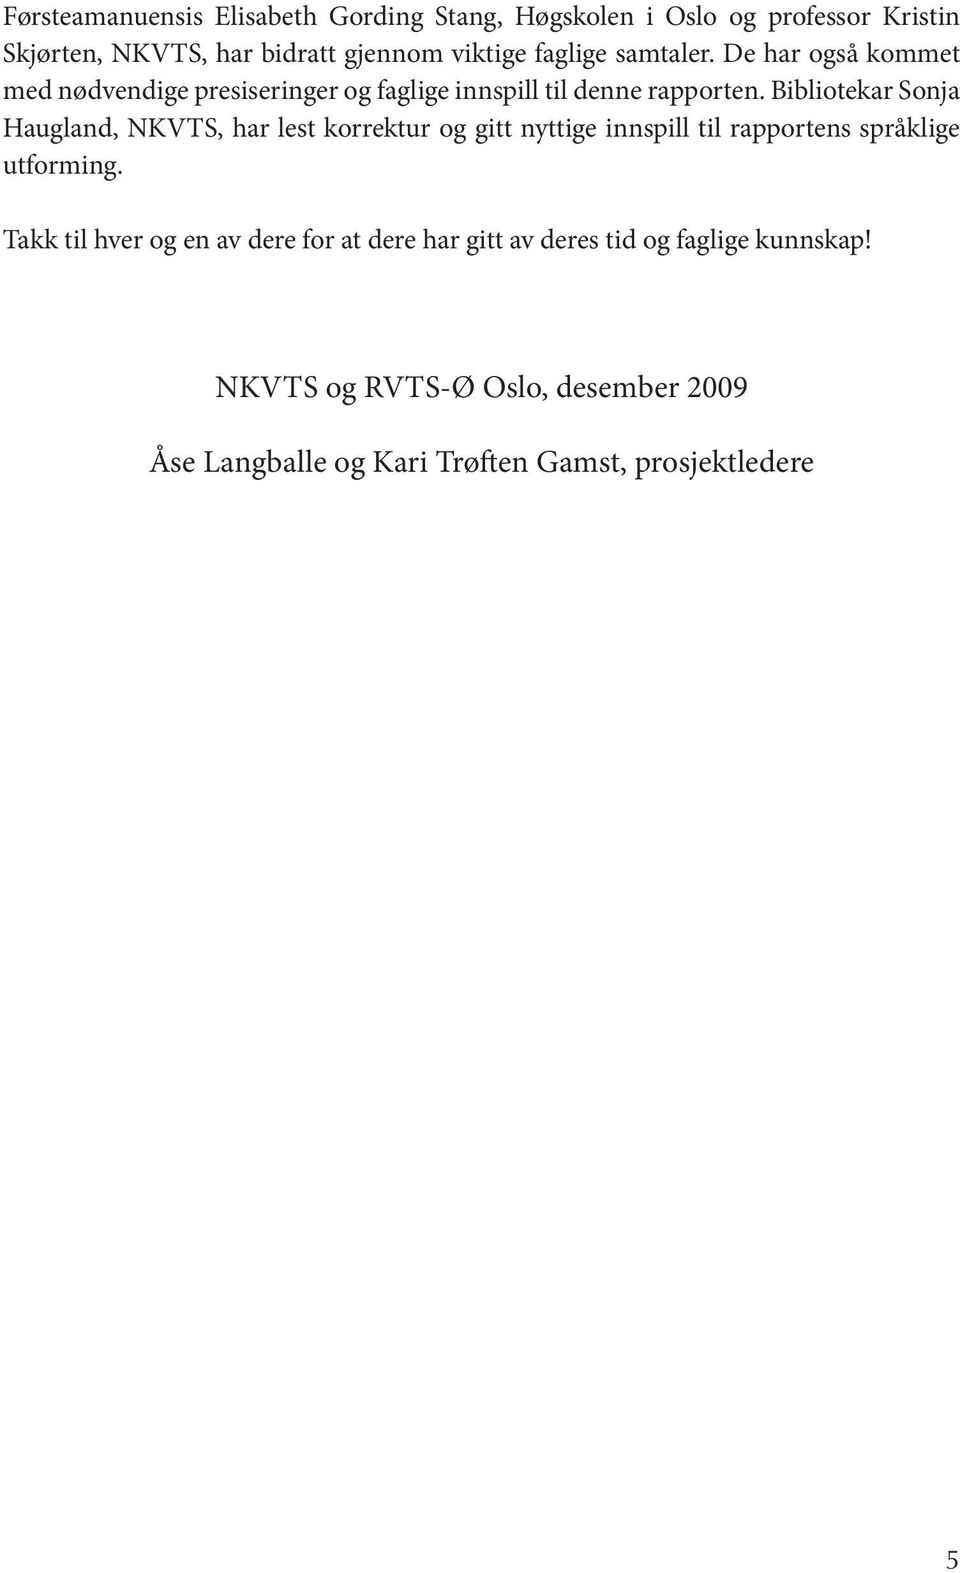 Bibliotekar Sonja Haugland, NKVTS, har lest korrektur og gitt nyttige innspill til rapportens språklige utforming.